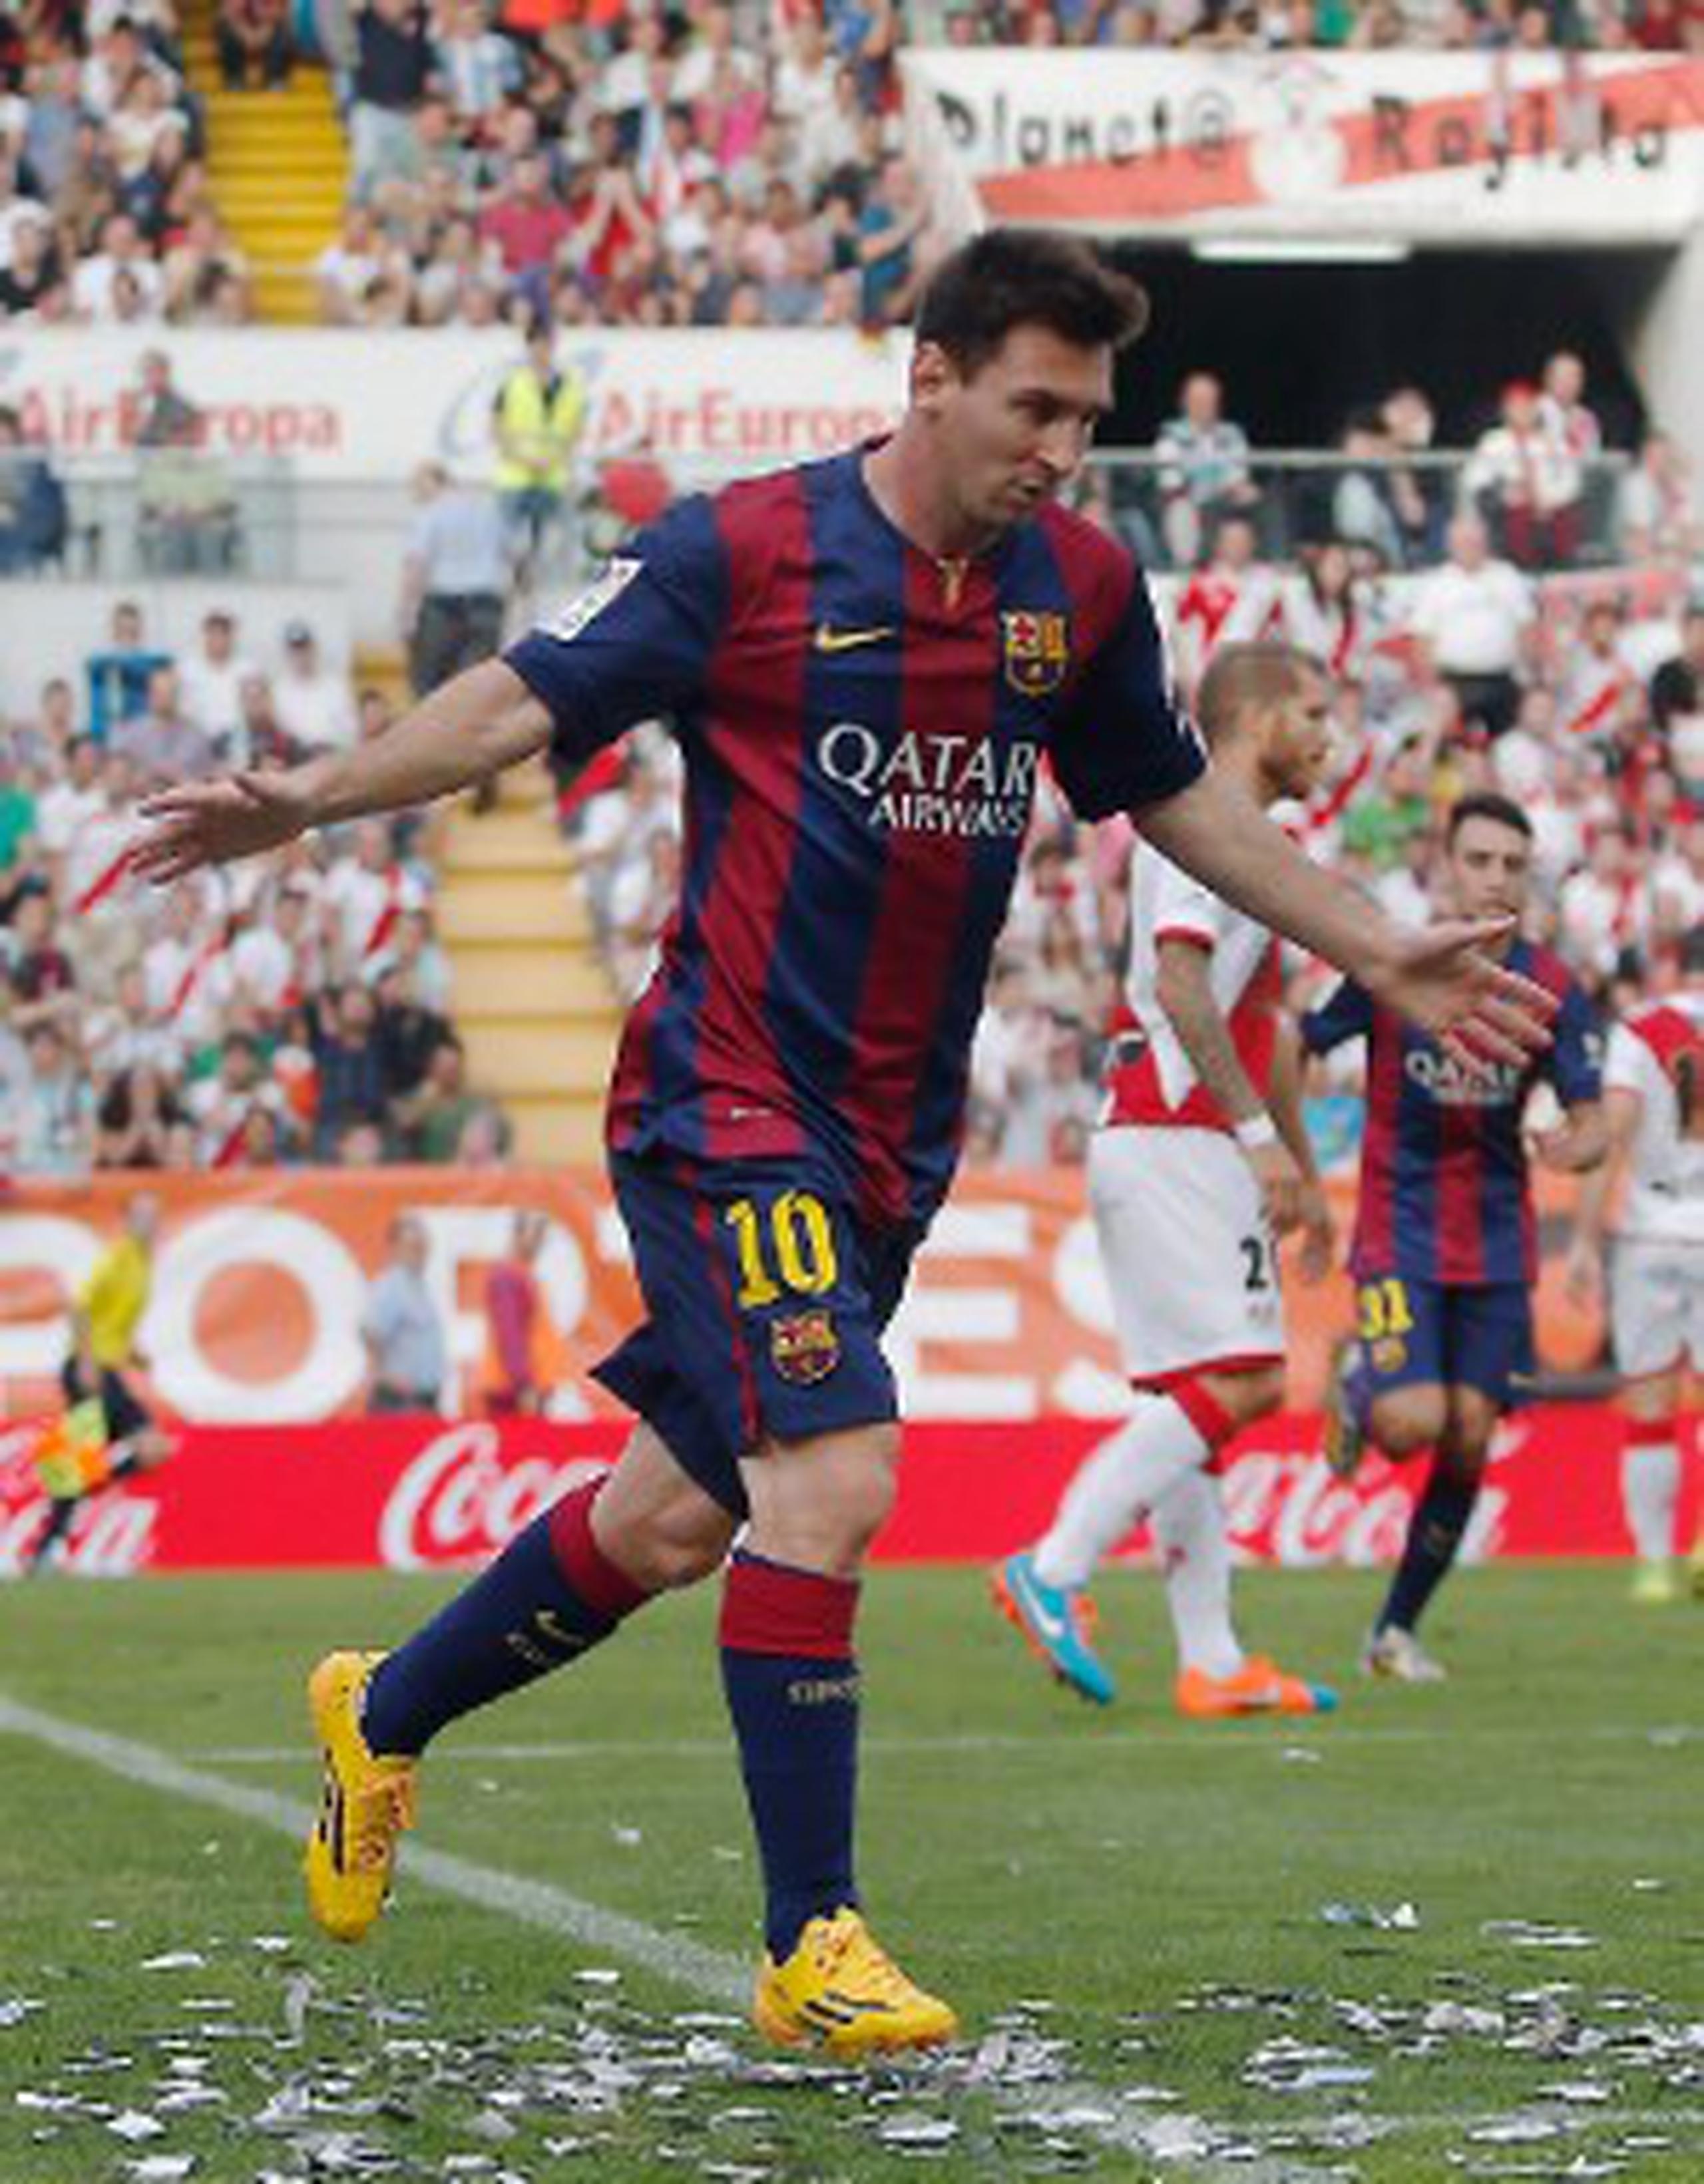 Lionel Messi, de Barcelona, celebra el gol que anotó contra Rayo Vallecano. Fue la diana 249 del argentino en la liga española, y está a dos de la marca histórica de Telmo Zarra. (AP / Andres Kudacki)